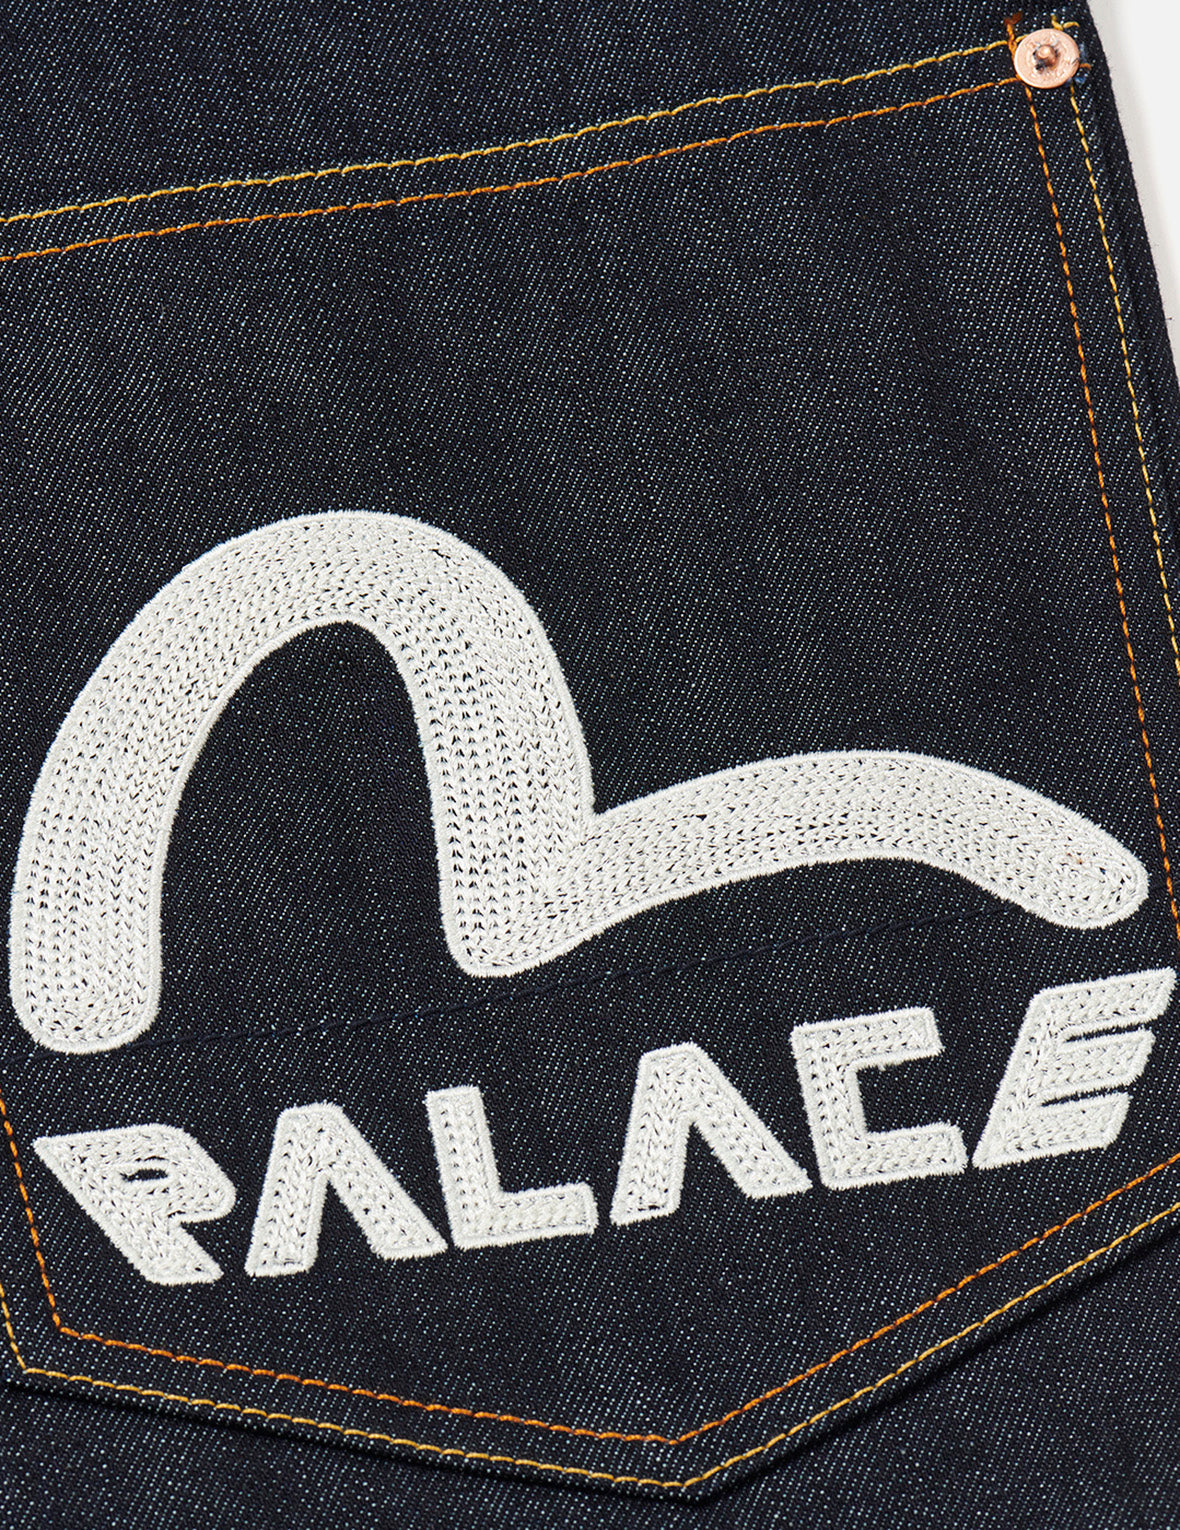 PALACE EVISU Logo Embroidery and Dice Daicock Print Regular Fit Denim Jacket